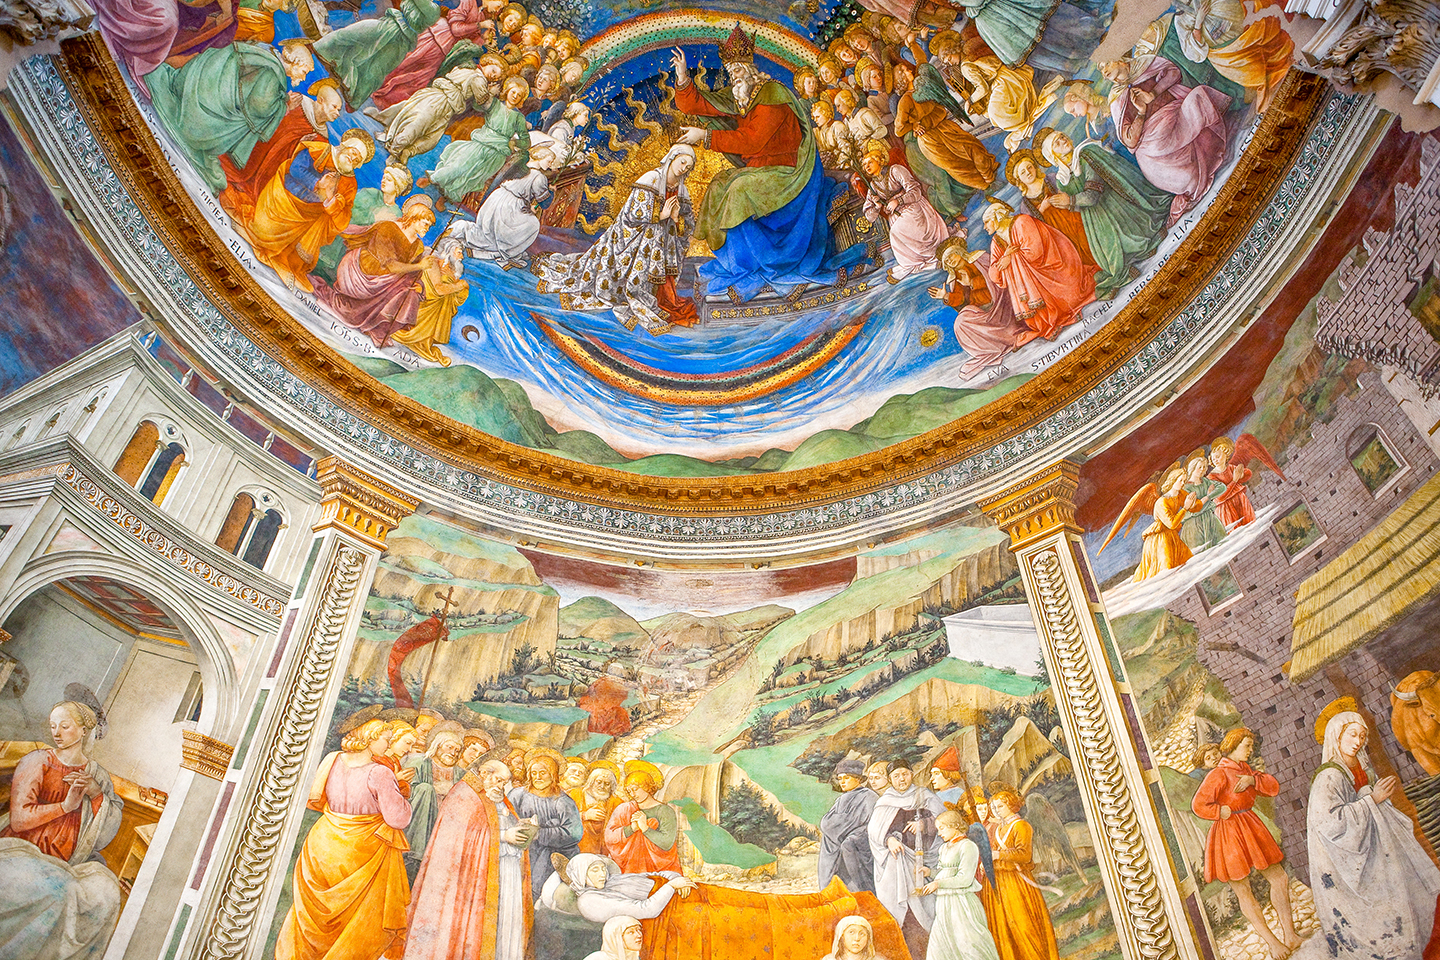 Bức bích họa của họa sỹ Filippo Lippi ở Nhà thờ chính tòa Spoleto của Umbria, gồm một bức chân dung tự họa nhỏ ở bên phải của phần bích họa “Death of the Virgin” (Đức Mẹ Đồng Trinh tạ thế) chính giữa bên dưới, năm 1467–1469. (Ảnh: Gimas, Shutterstock)